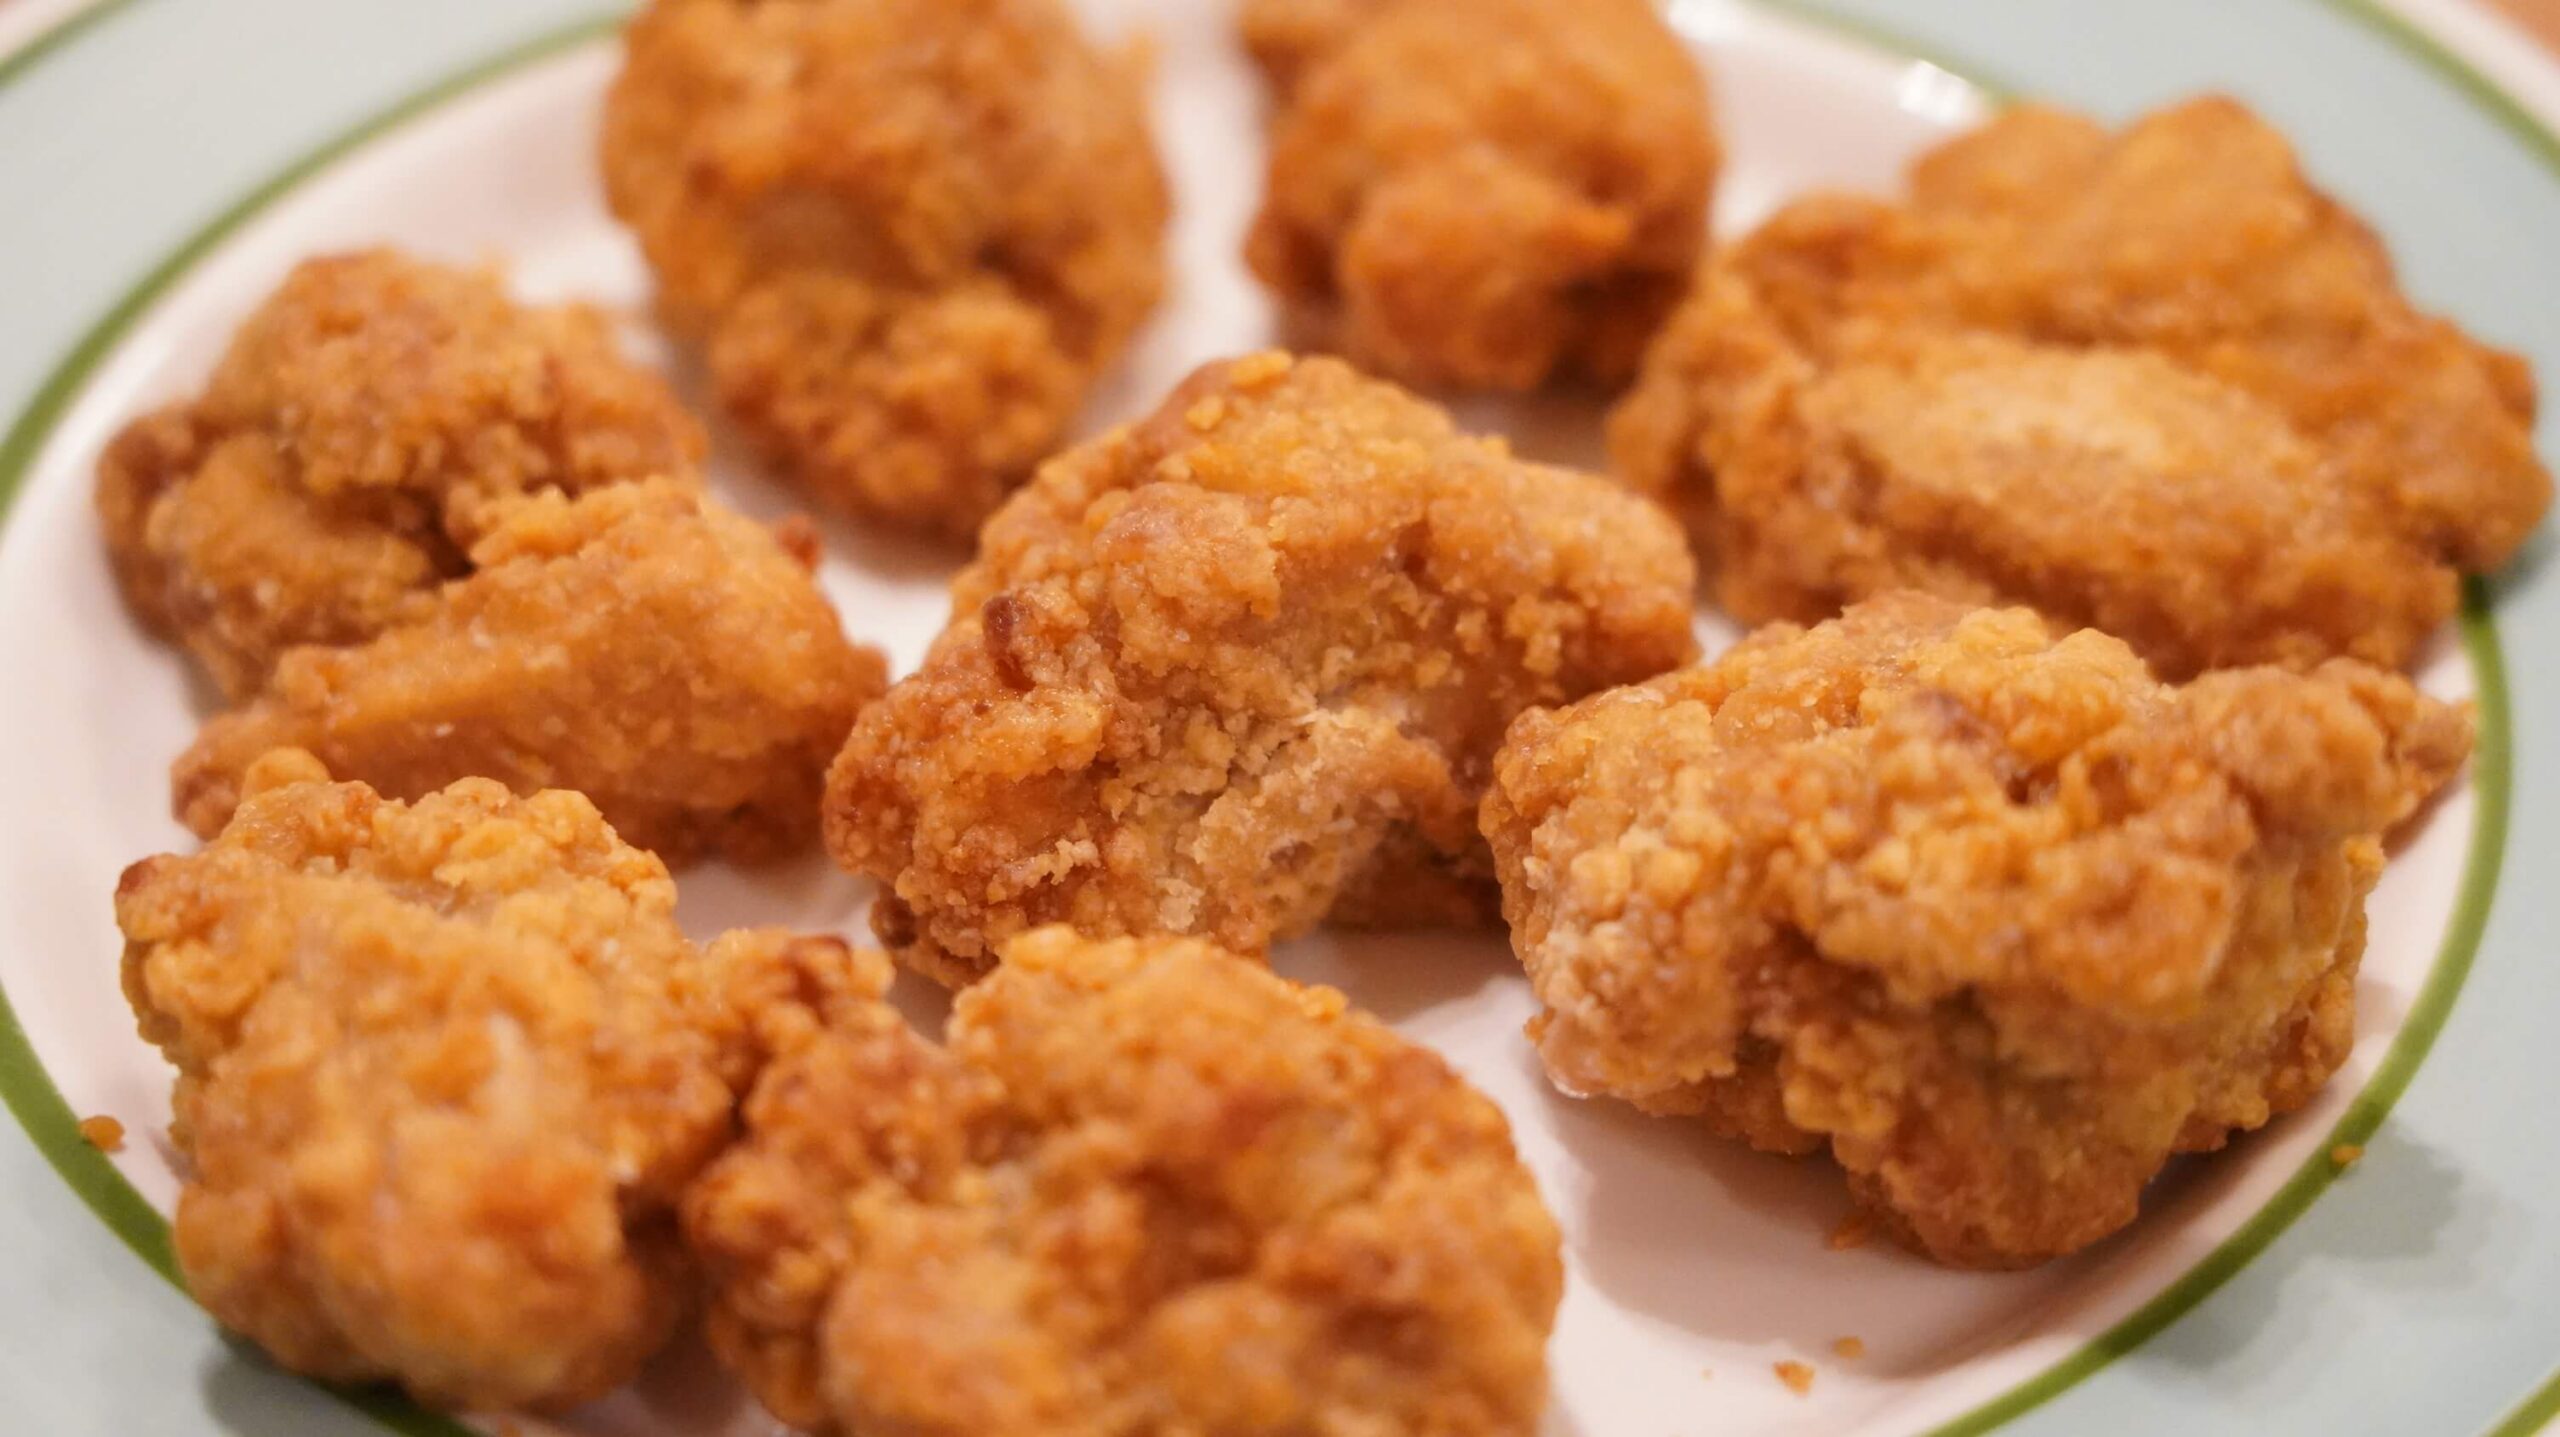 イオン・トップバリュおすすめ冷凍食品「若鶏のたれづけ唐揚げ」を皿に盛り付けた写真